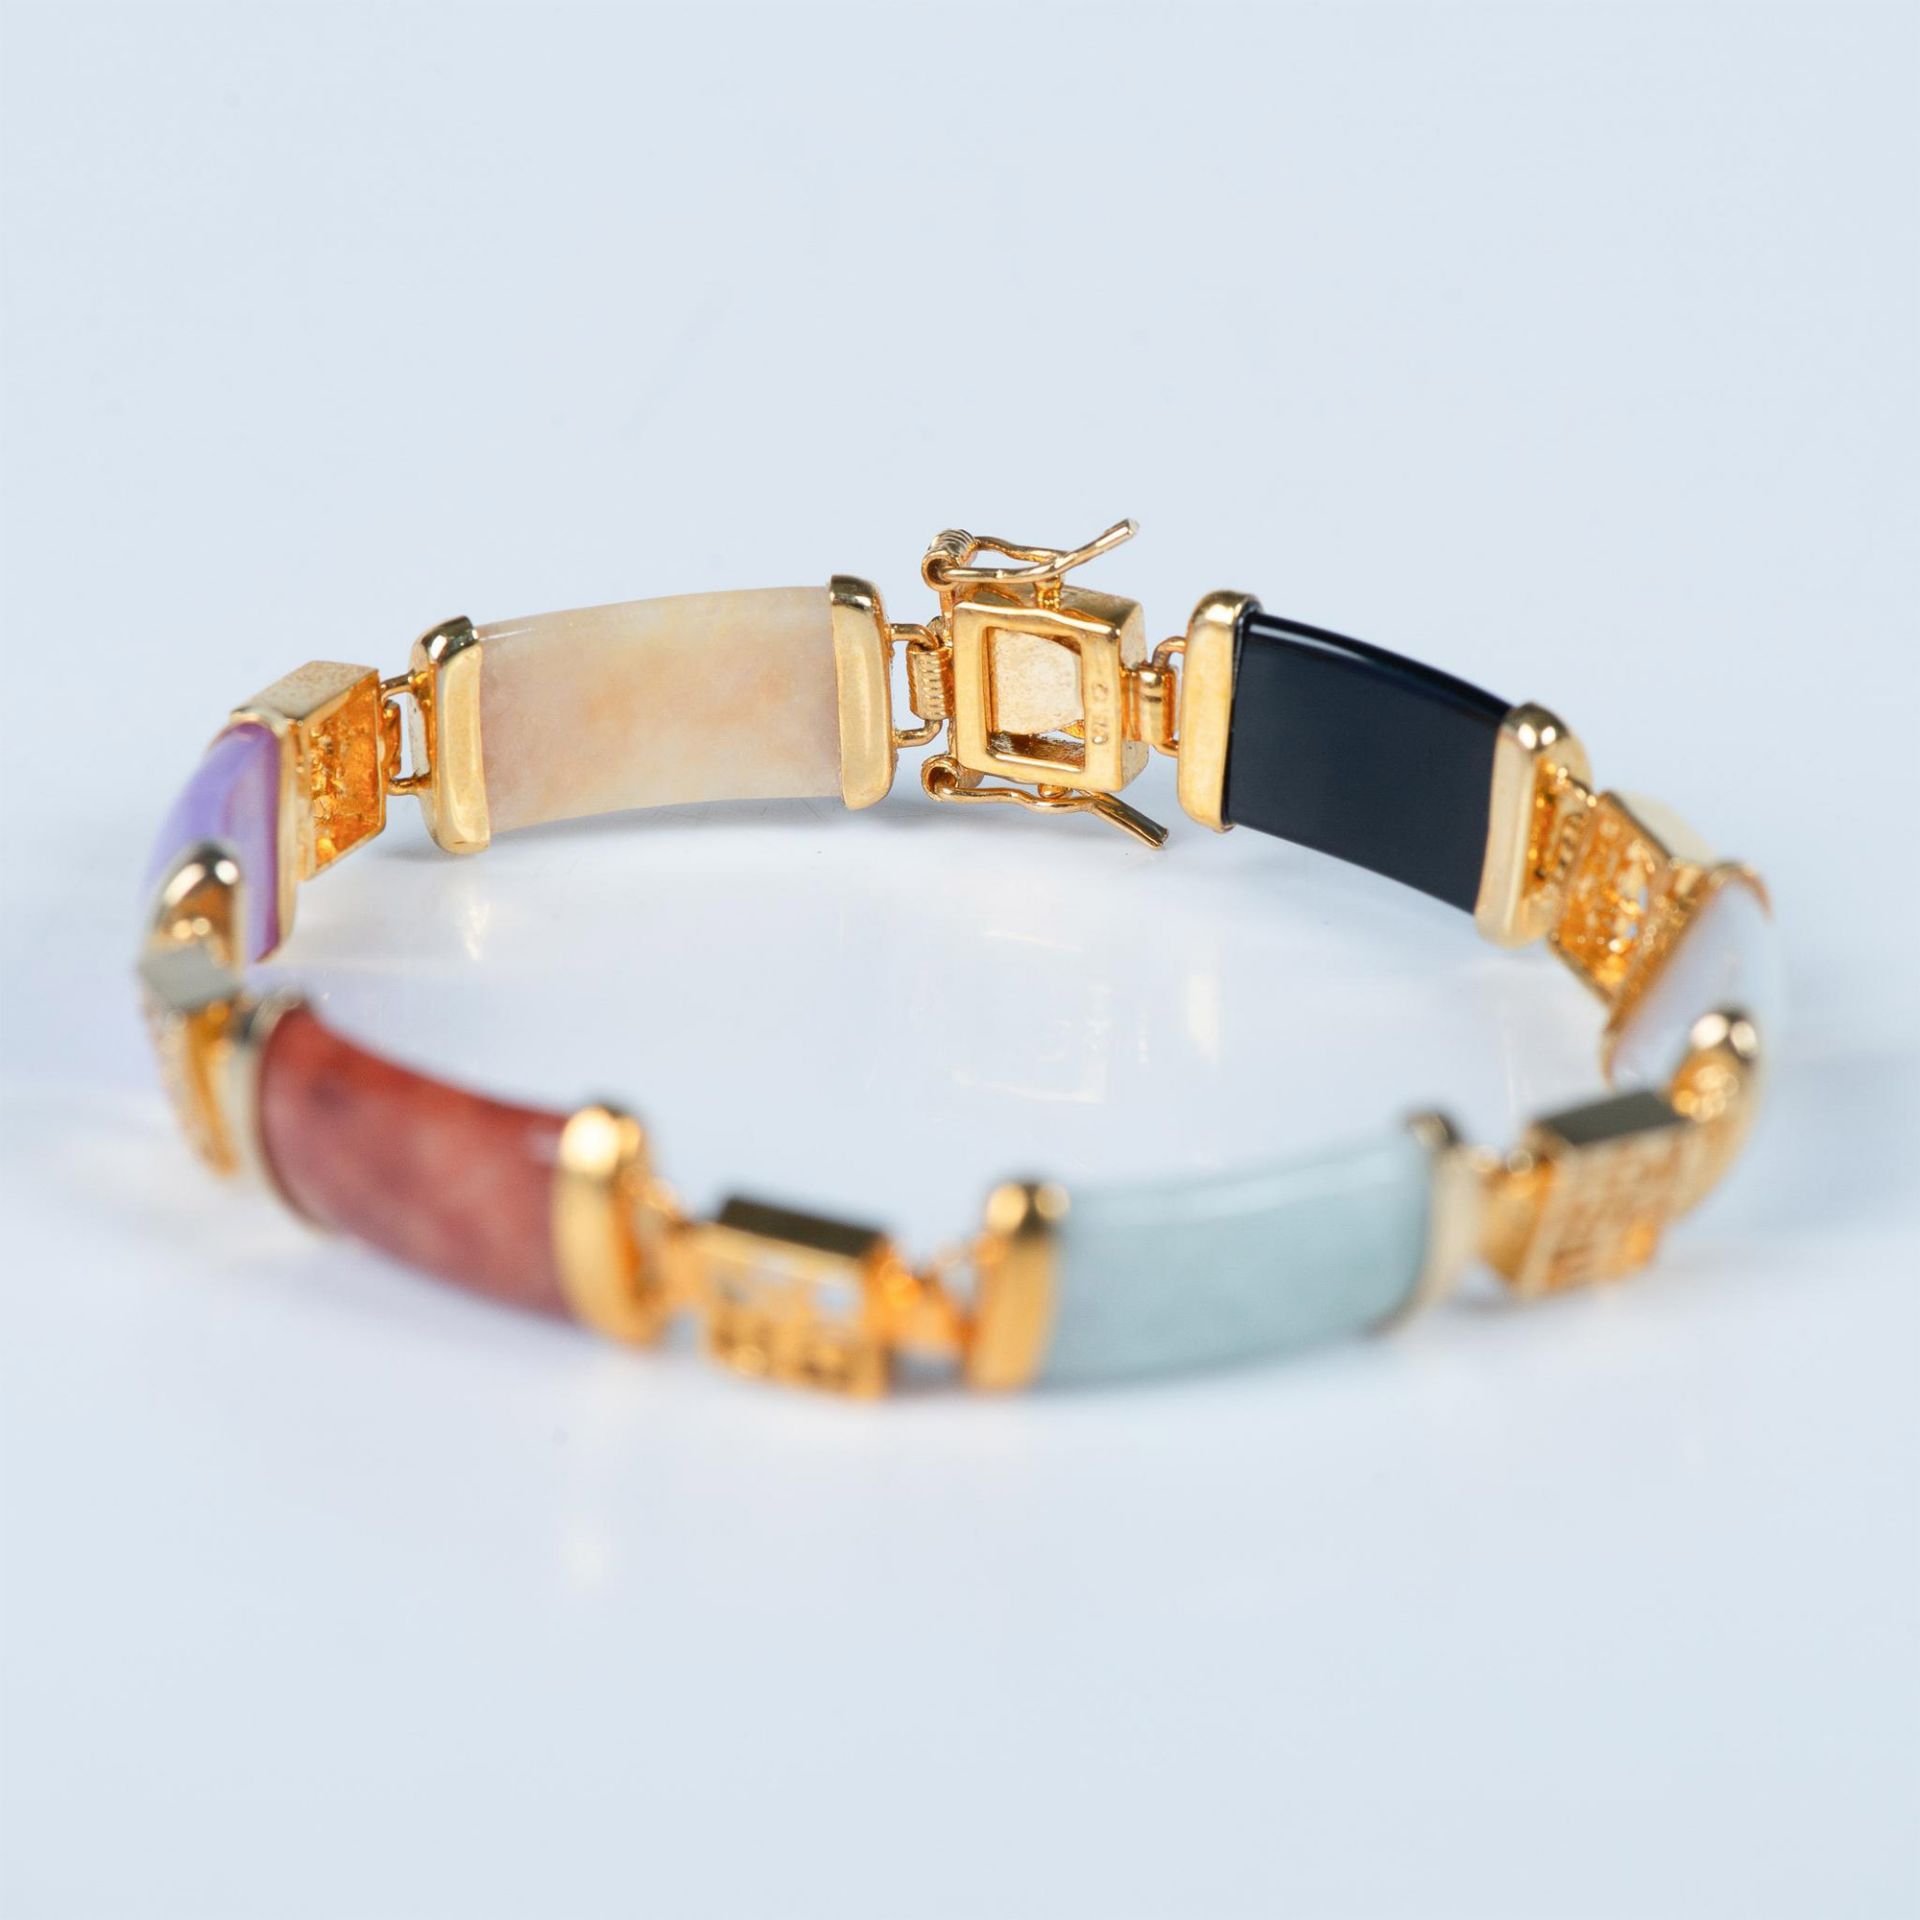 Chinese 14K Gold Multi-Colored Gemstone Bracelet - Image 2 of 7